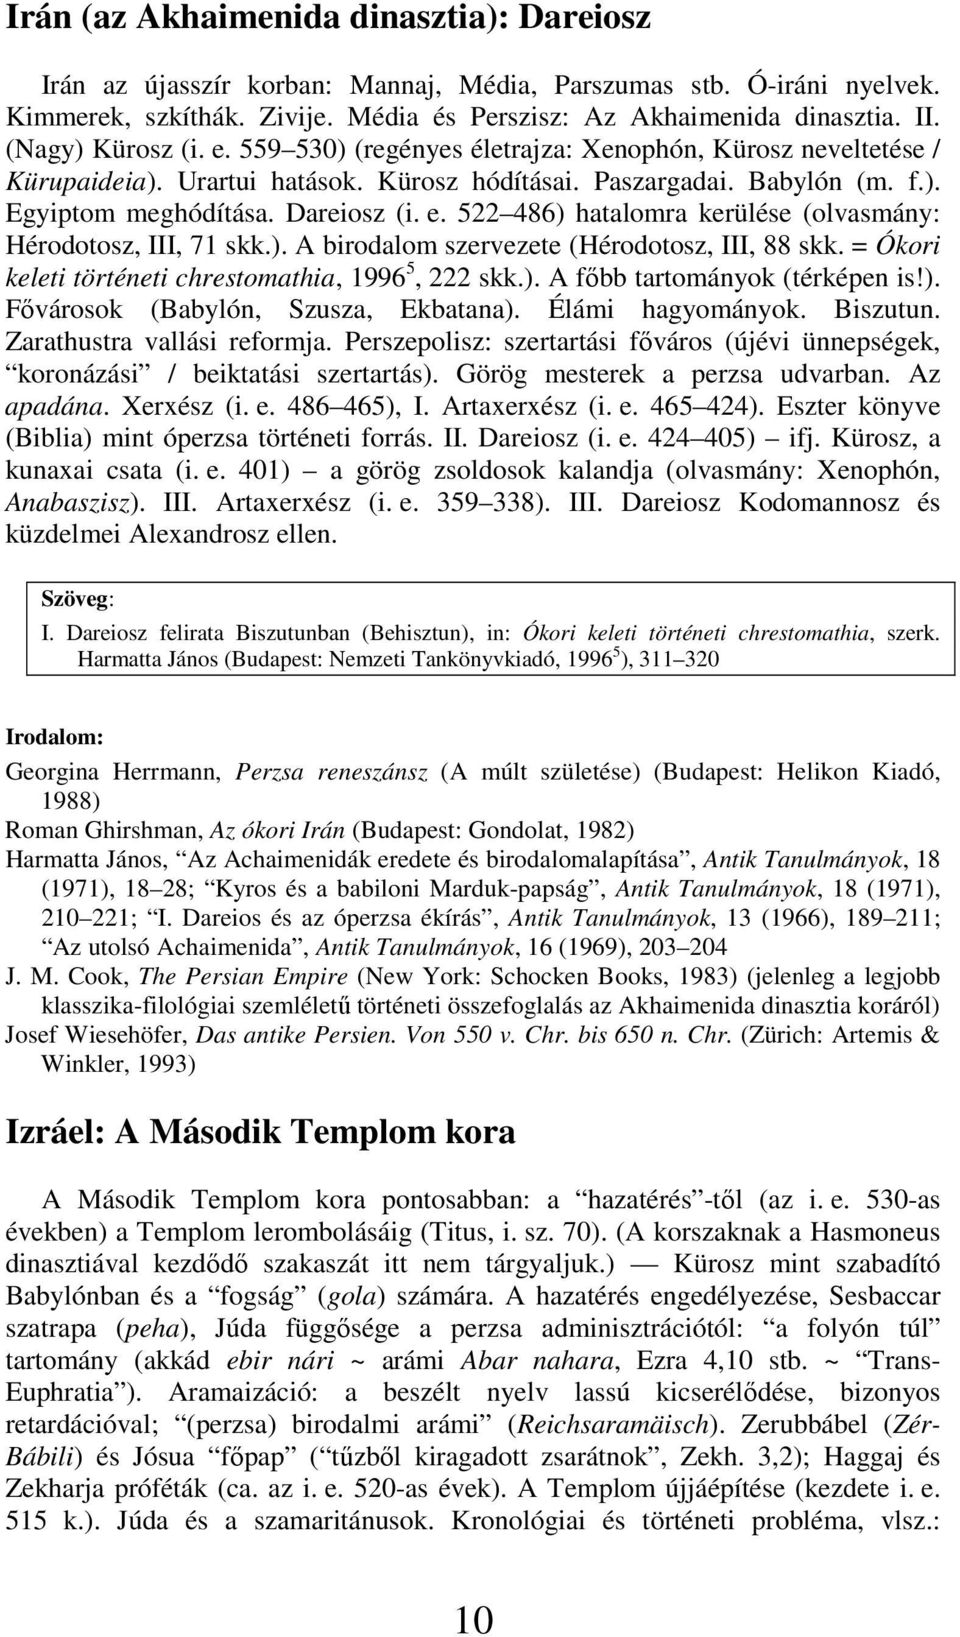 ). A birodalom szervezete (Hérodotosz, III, 88 skk. = Ókori keleti történeti chrestomathia, 1996 5, 222 skk.). A fıbb tartományok (térképen is!). Fıvárosok (Babylón, Szusza, Ekbatana).